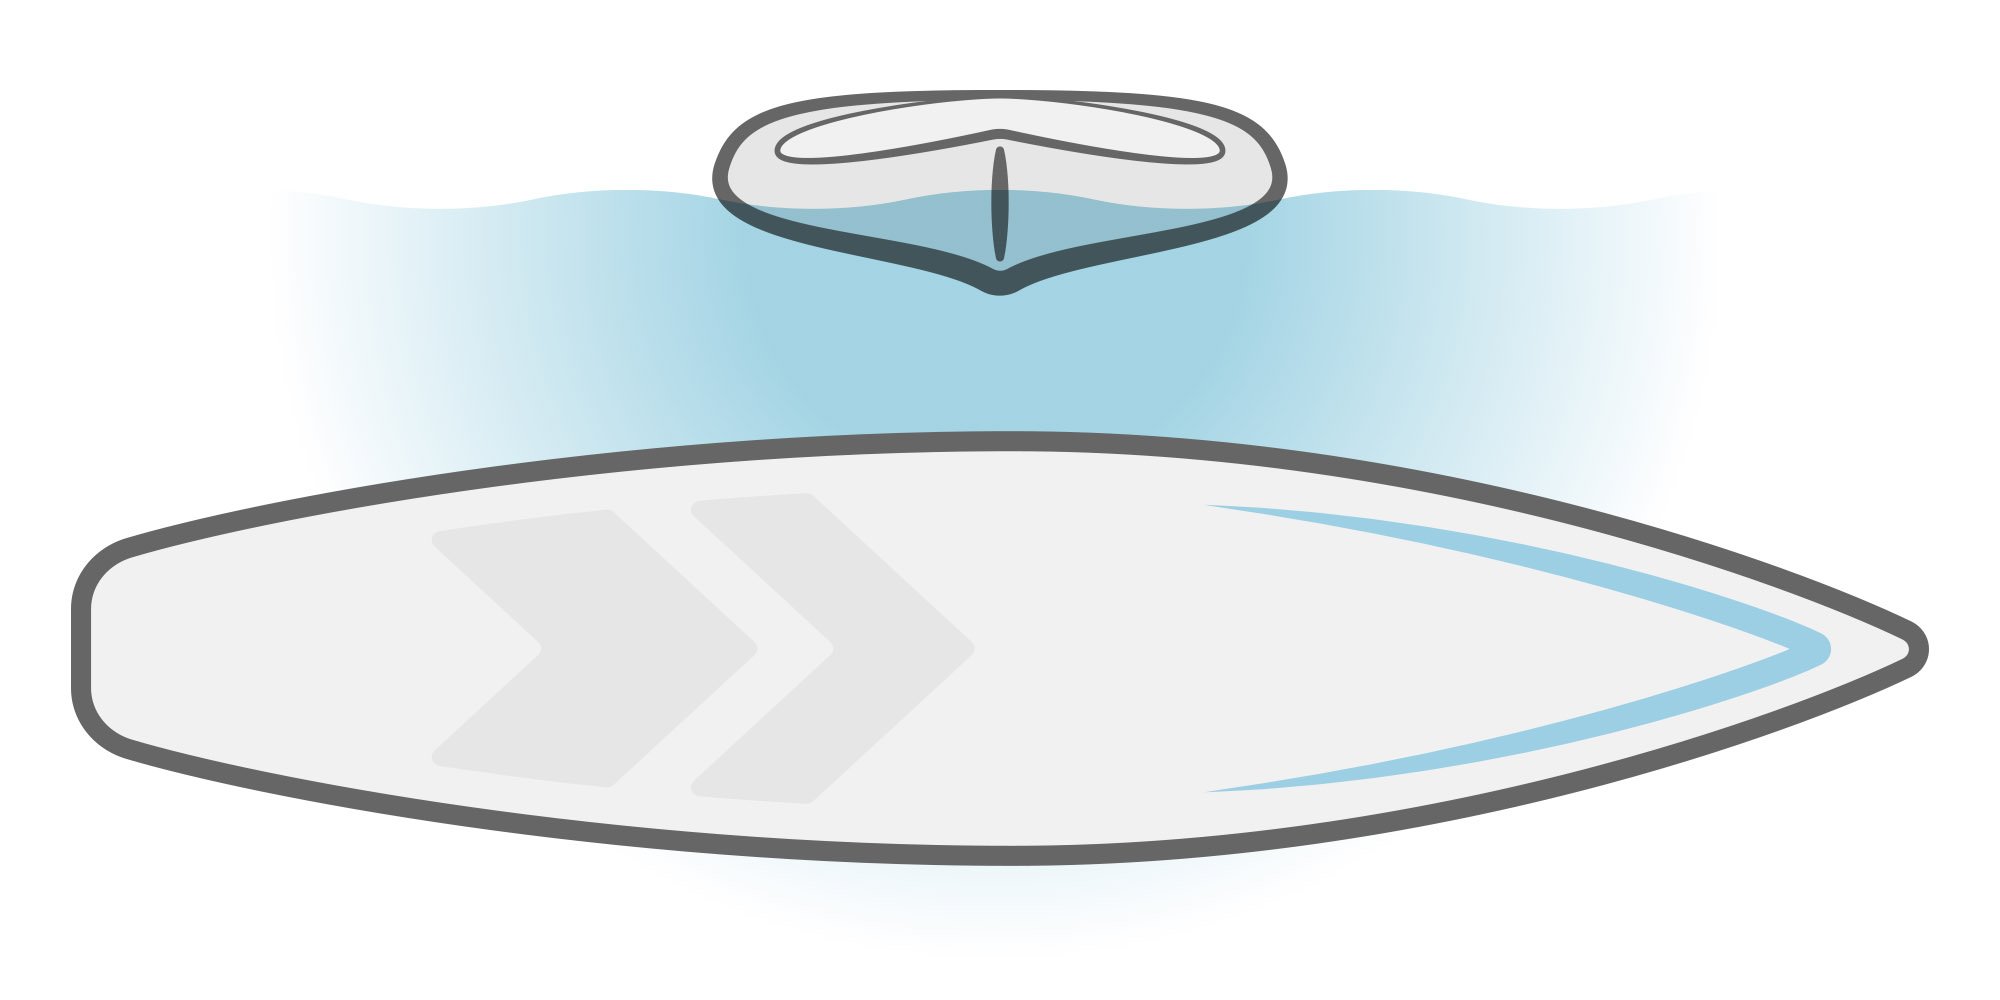 Illustration eines SUP-Boards mit spitzem Rumpf.